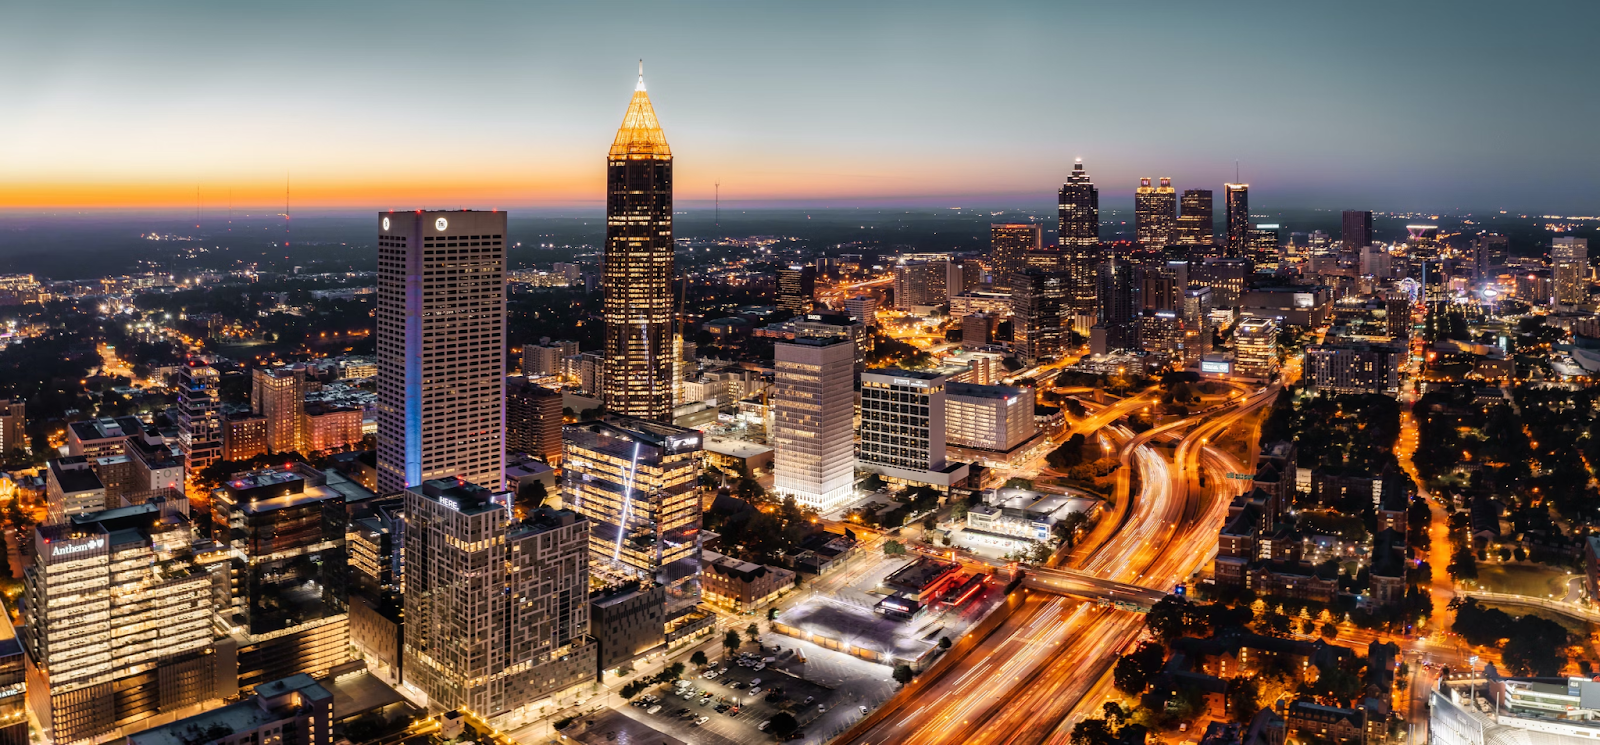 Aerial view of Atlanta at night.